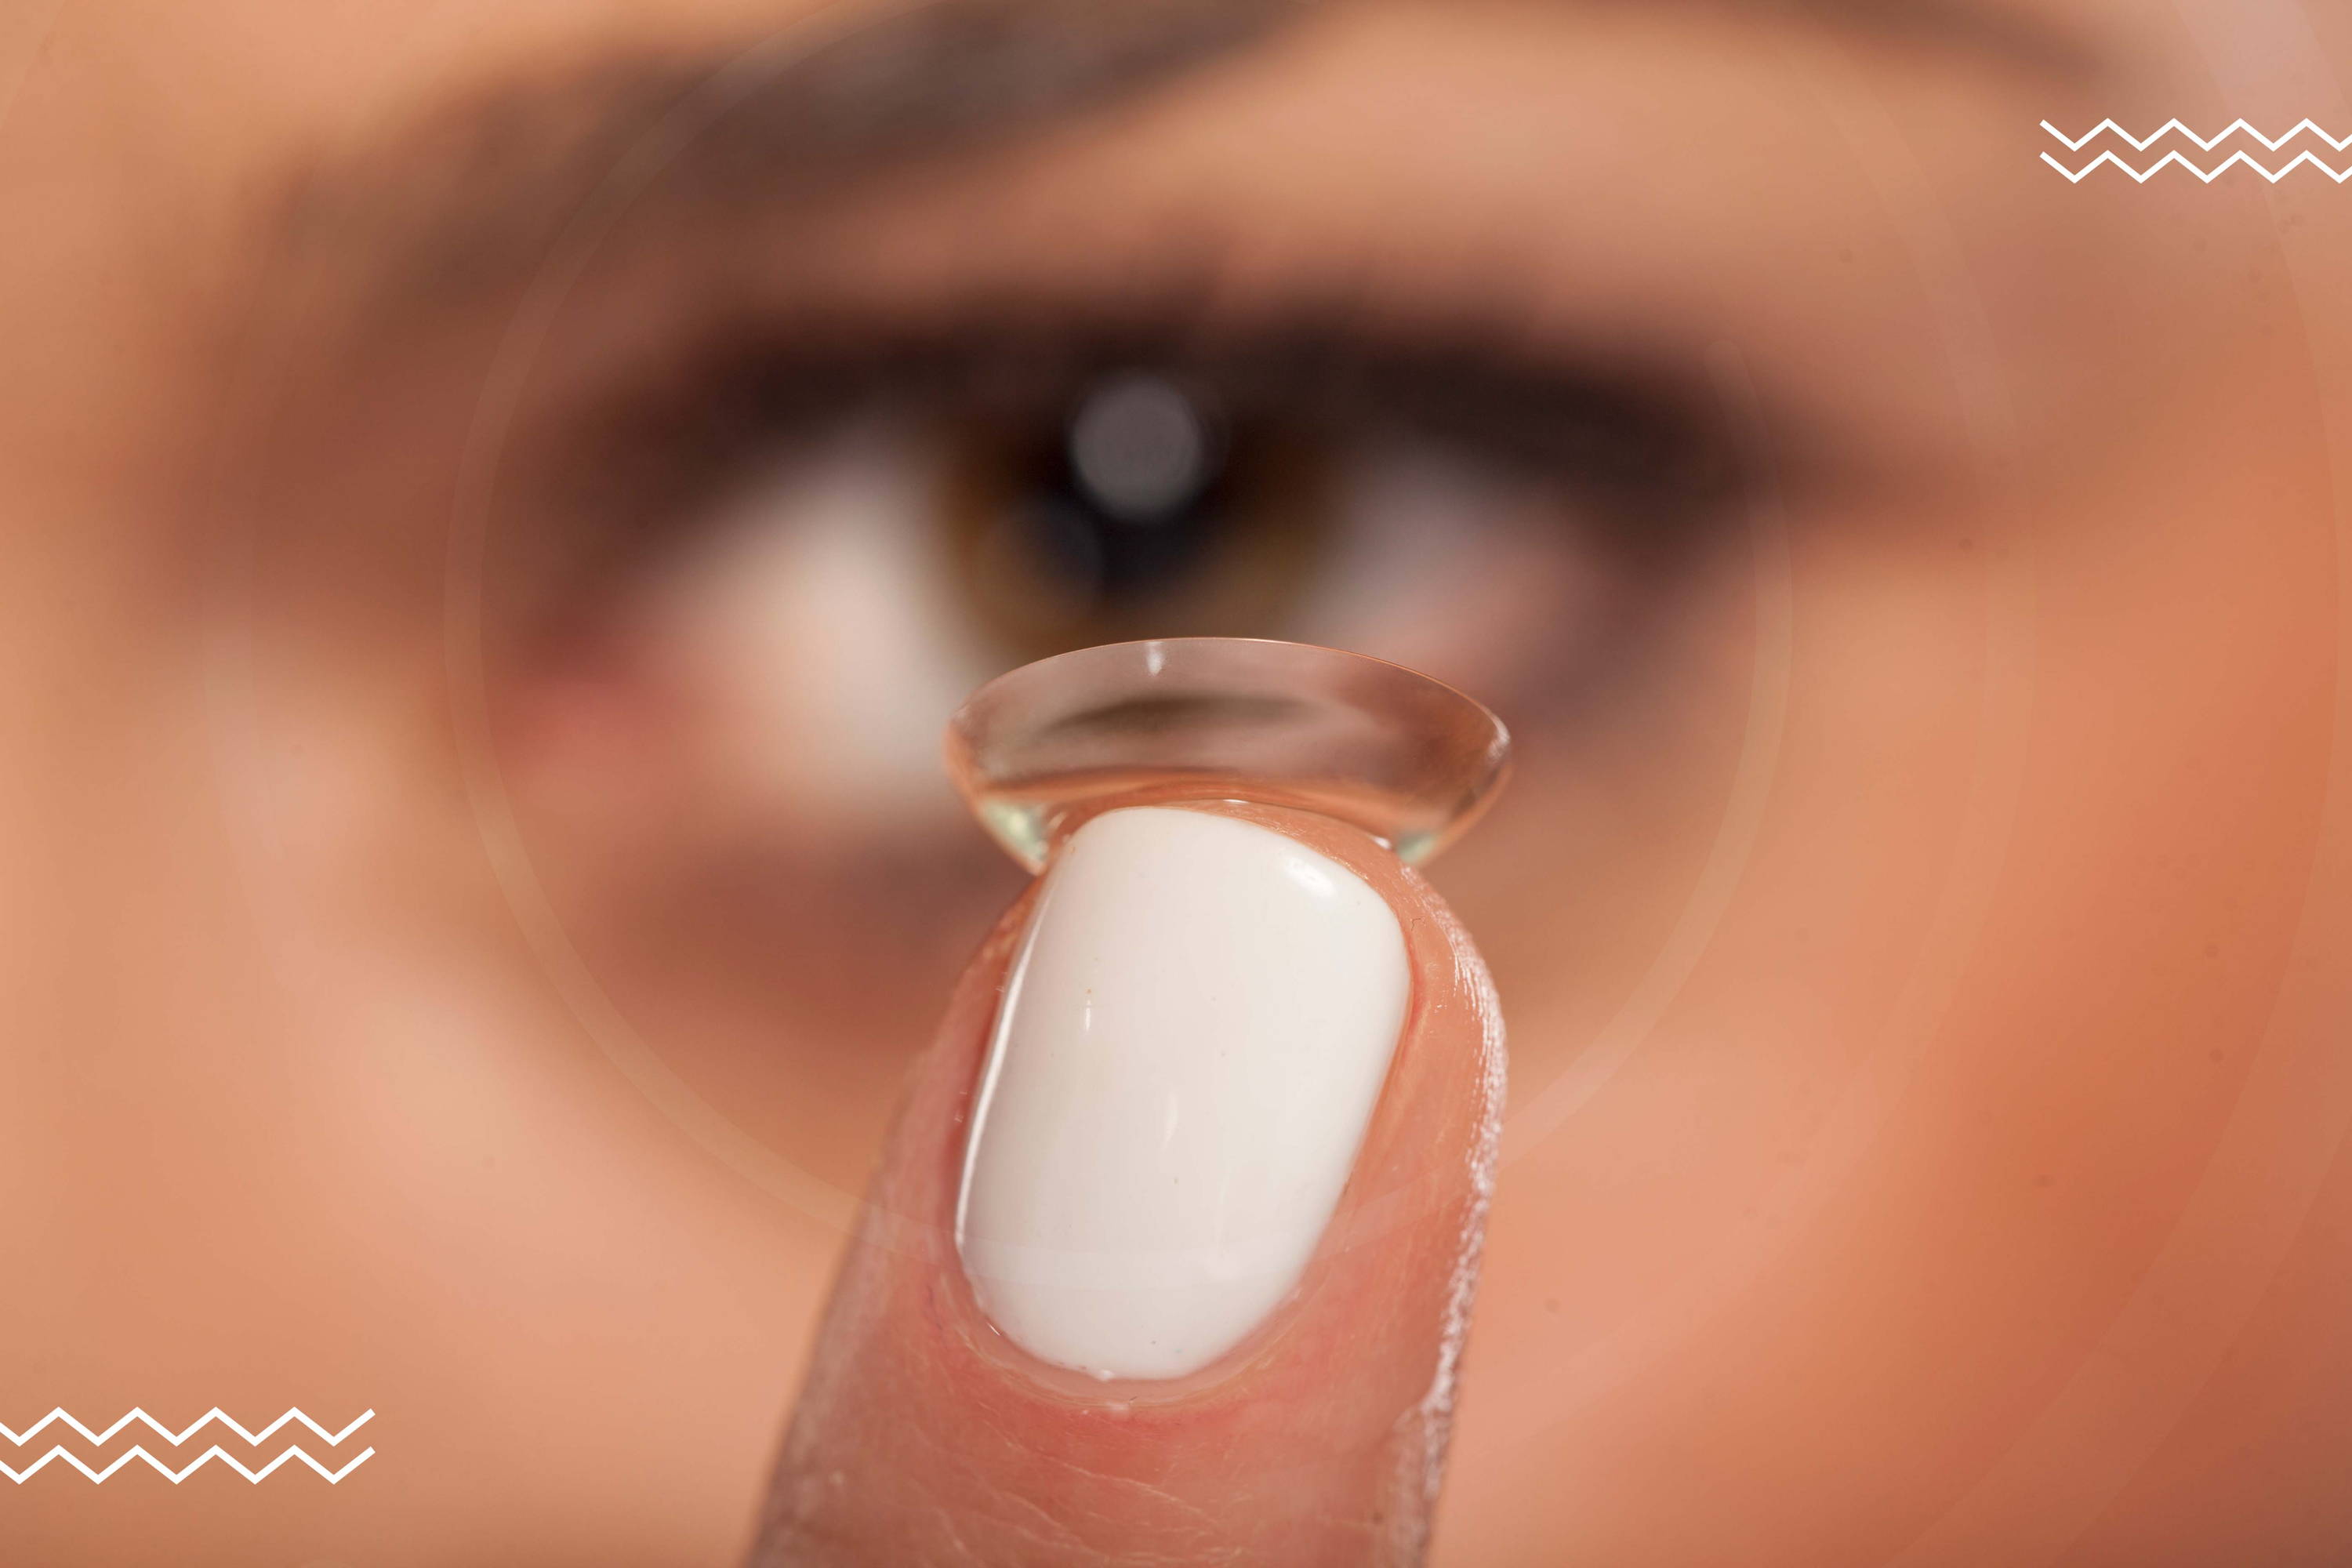 Una mujer mira directamente a la cámara mientras sostiene un lente de contacto con su dedo índice.